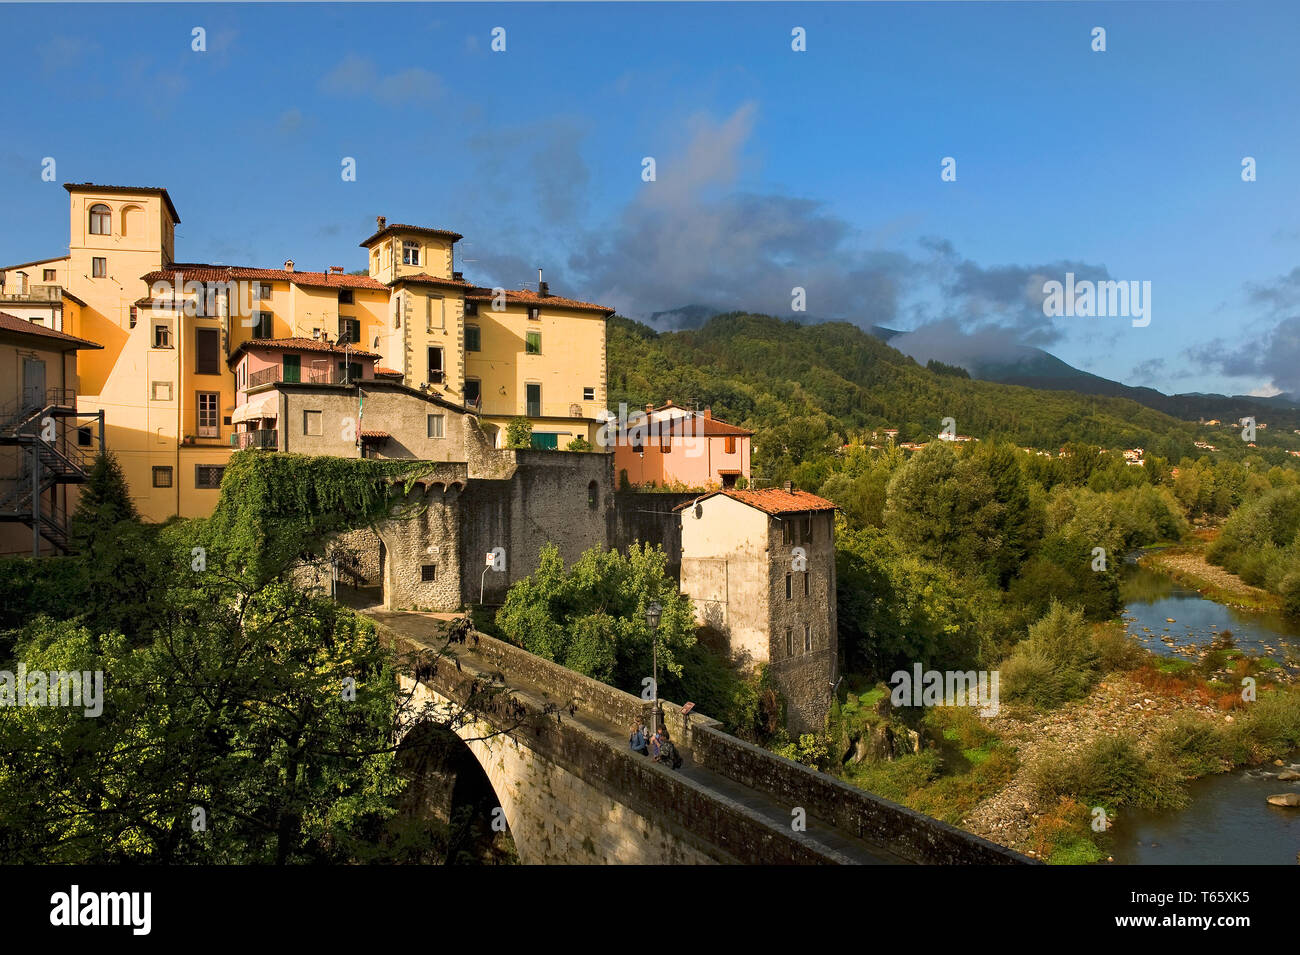 Castelnuovo di Garfagnana, una cittadina in provincia di Lucca, Toscana, Italia centrale. Foto Stock